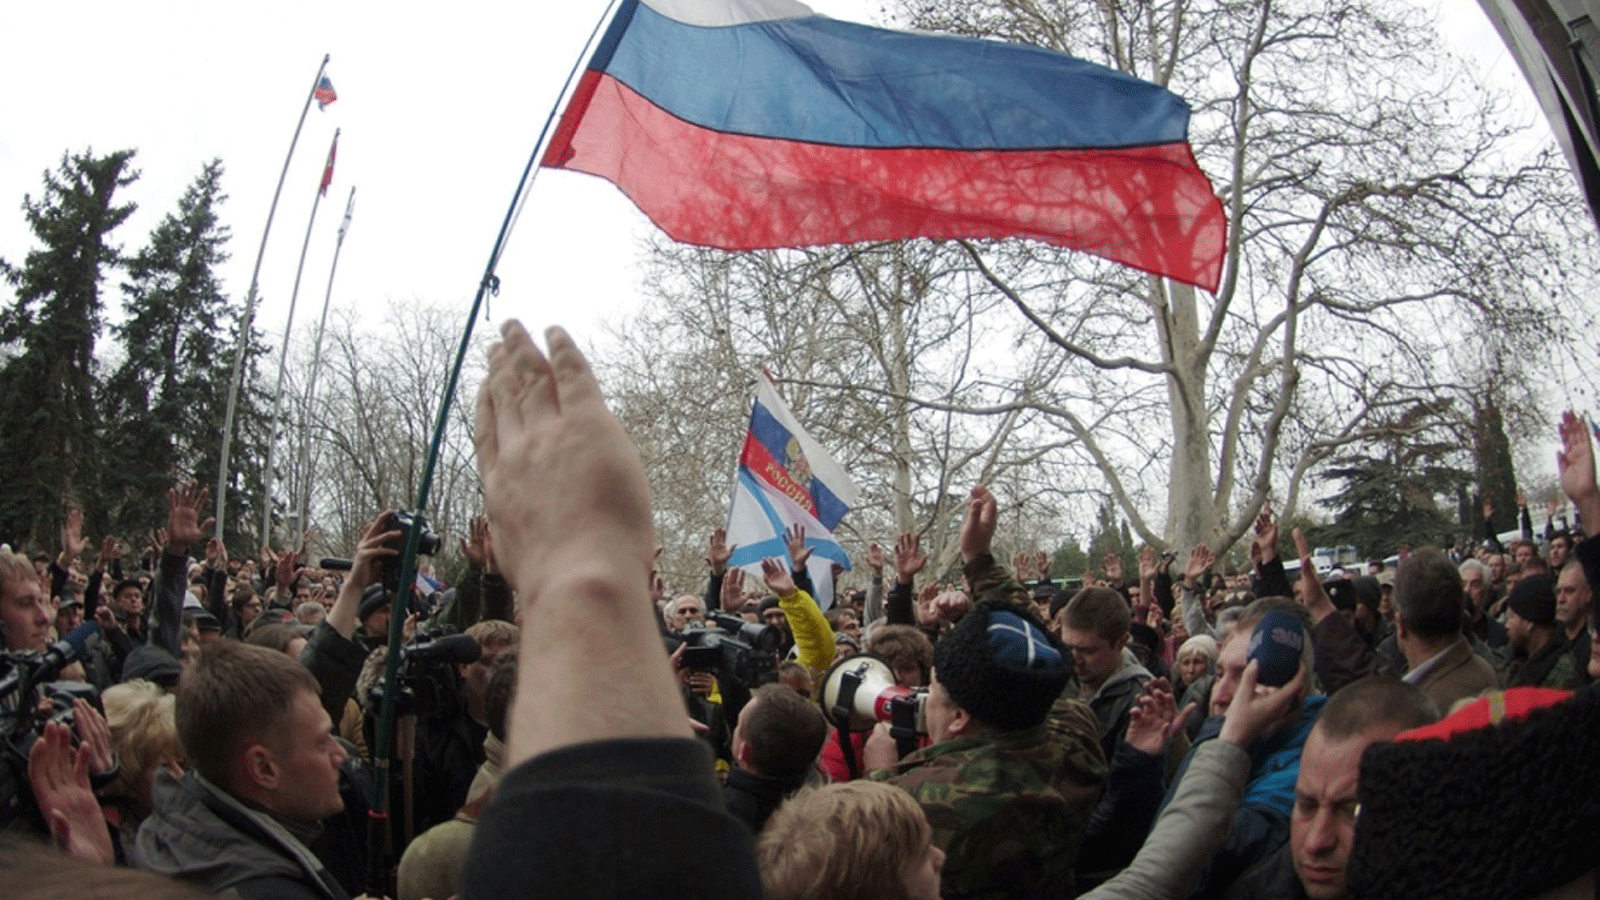 صورة أرشيفية لأشخاص يلوحون بالأعلام الروسية أثناء احتجاجهم في مدينة سيفاستوبول بجنوب أوكرانيا، قاعدة أسطول البحر الأسود الروسي